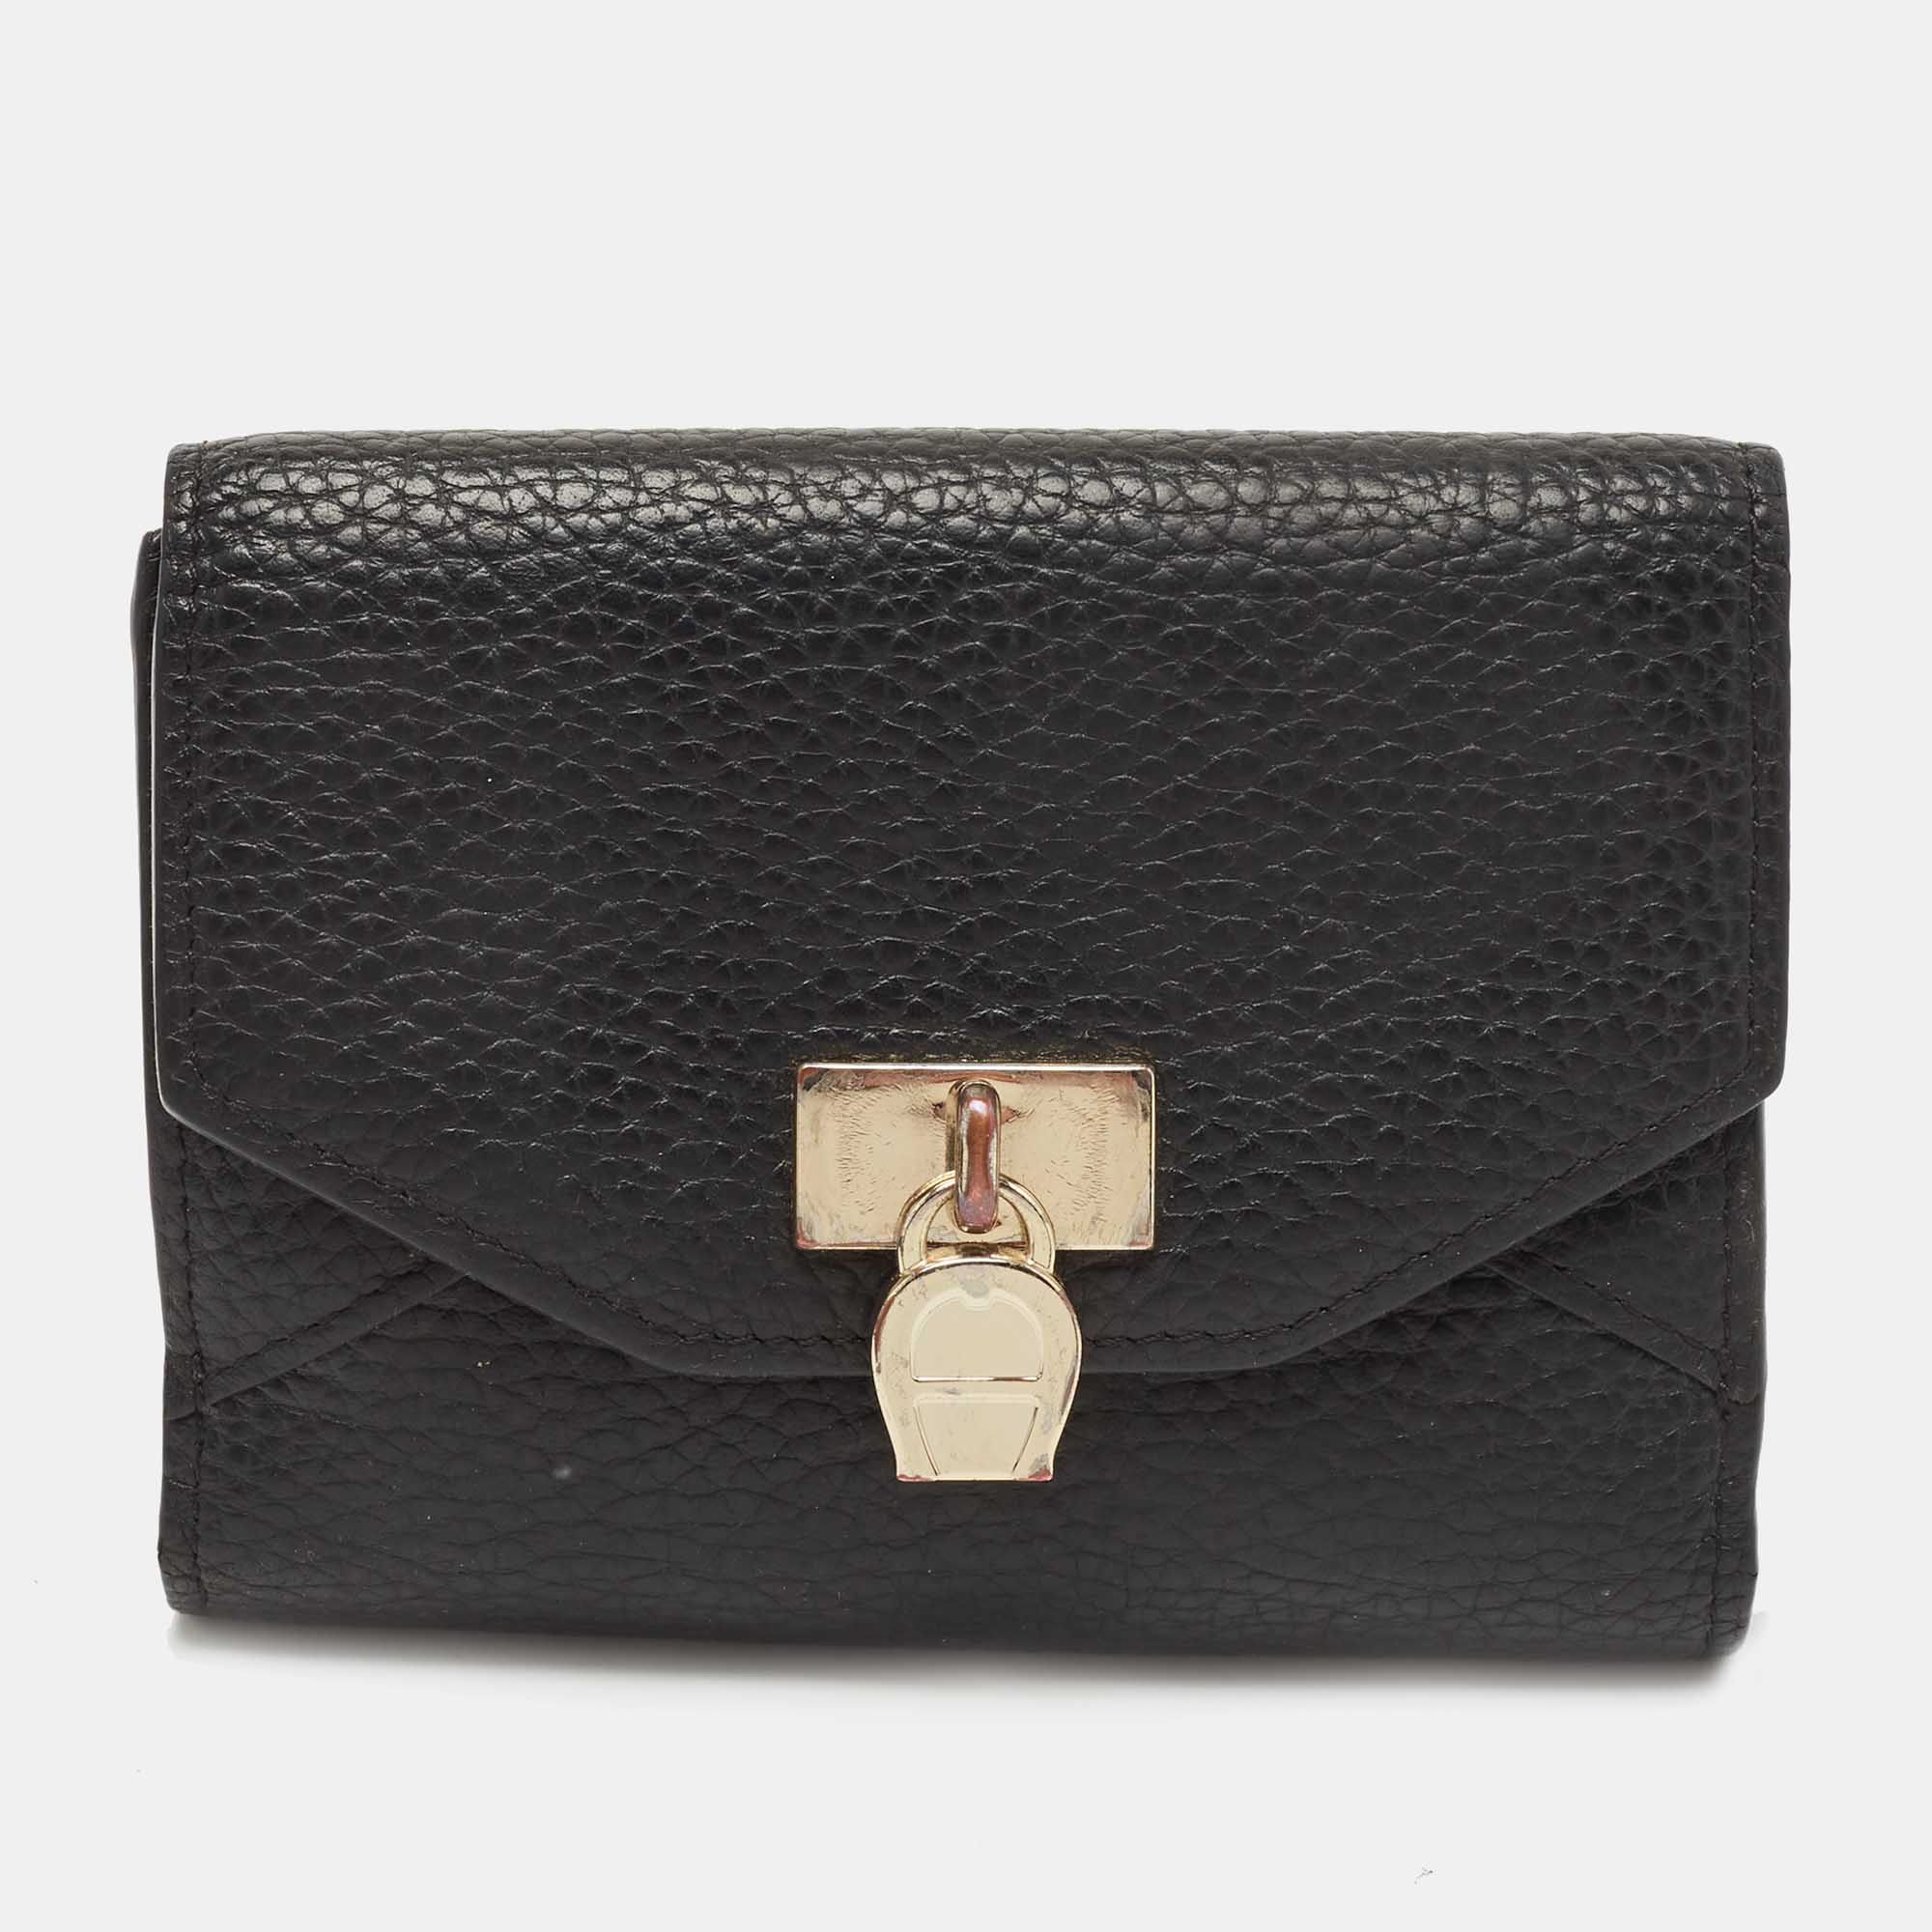 

Aigner Black Leather Envelope Flap Compact Wallet